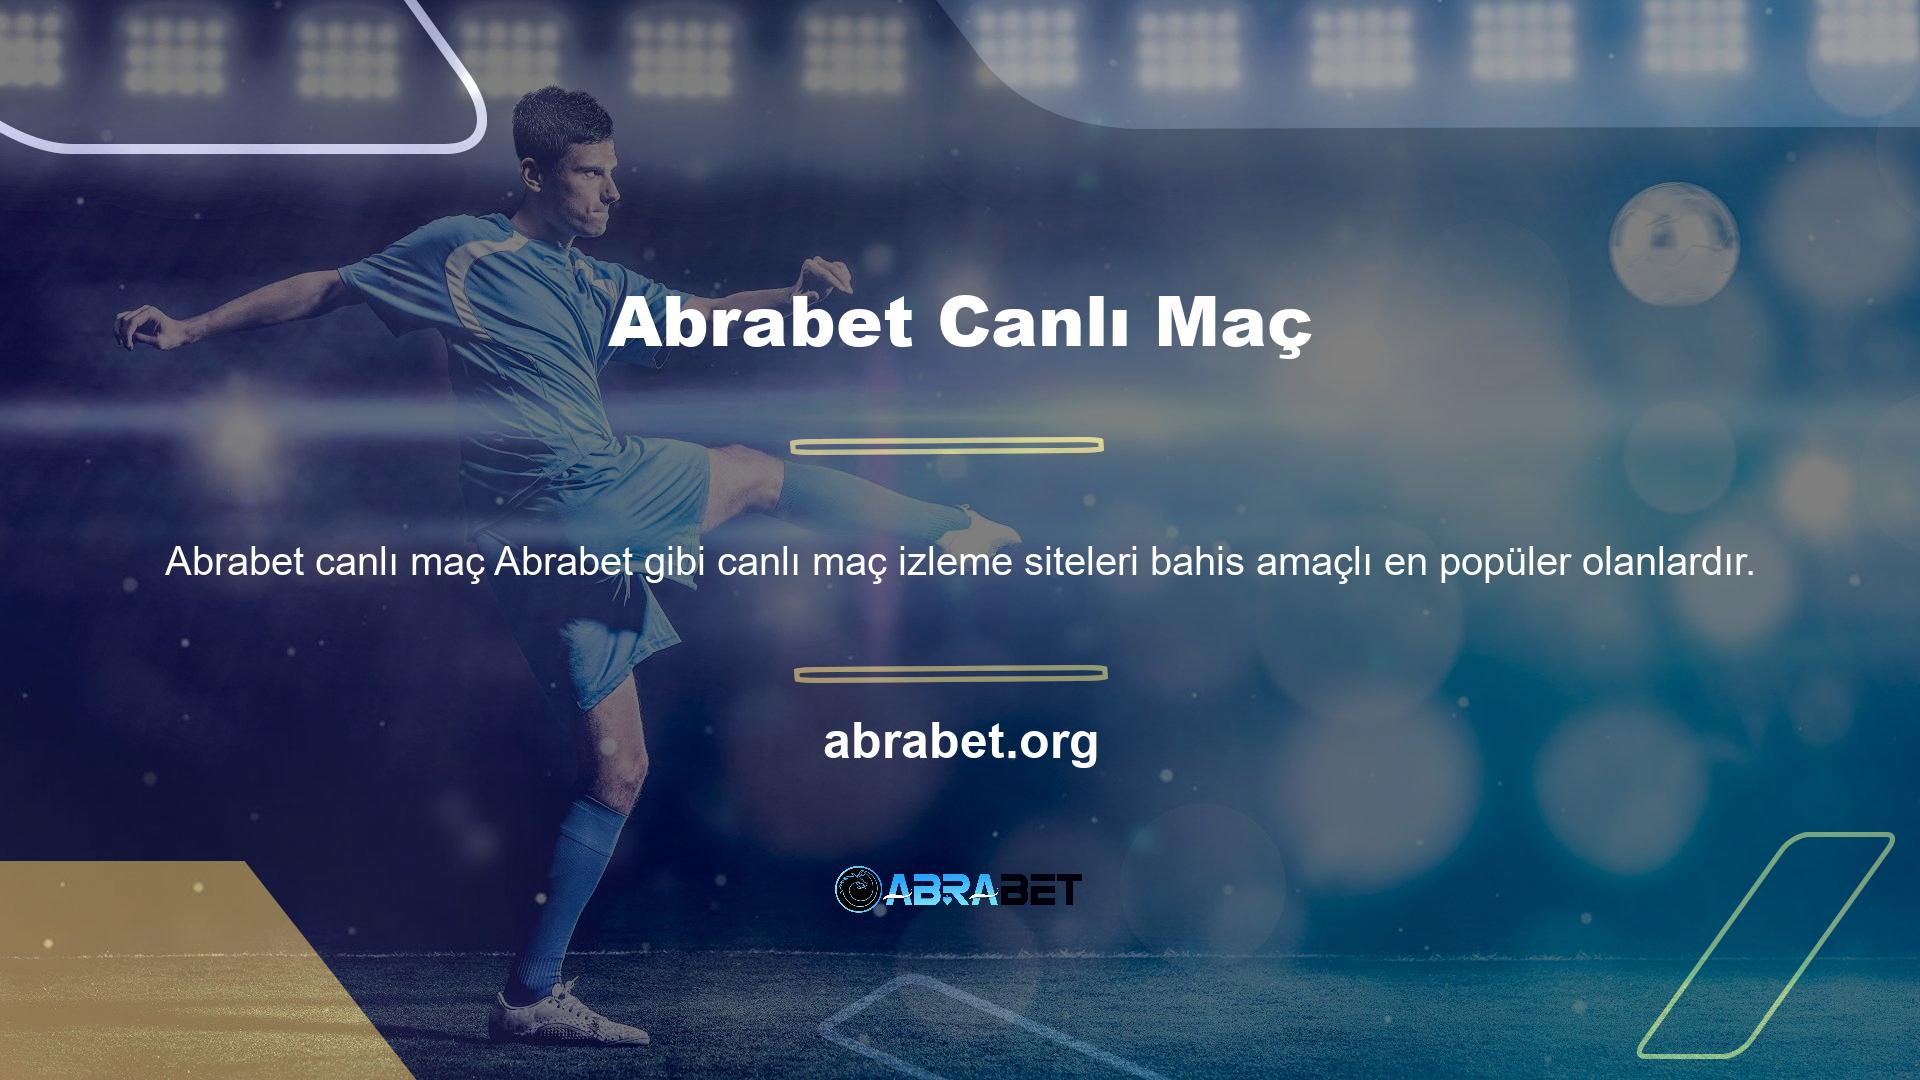 Abrabet, bahis dünyasında farklı yenilikleri deneyen ve kullanıcılarına canlı maç izleme şansı sunan ilk siteler arasında yer aldı